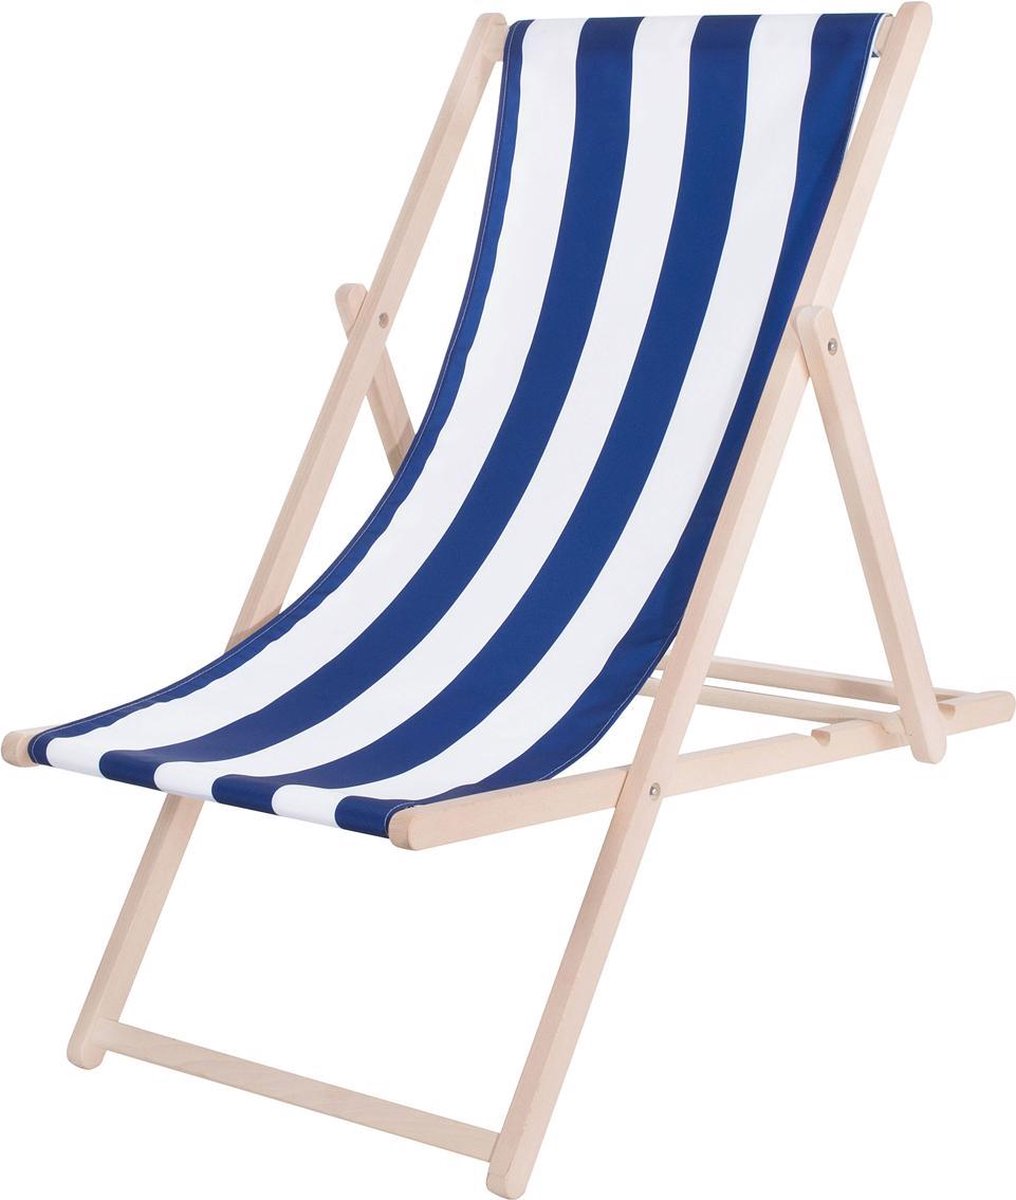 Sta in plaats daarvan op Onverschilligheid beeld Platinet PSWSBL inklapbare strandstoel 3-standen, houten frame met stoffen  bekleding... | bol.com